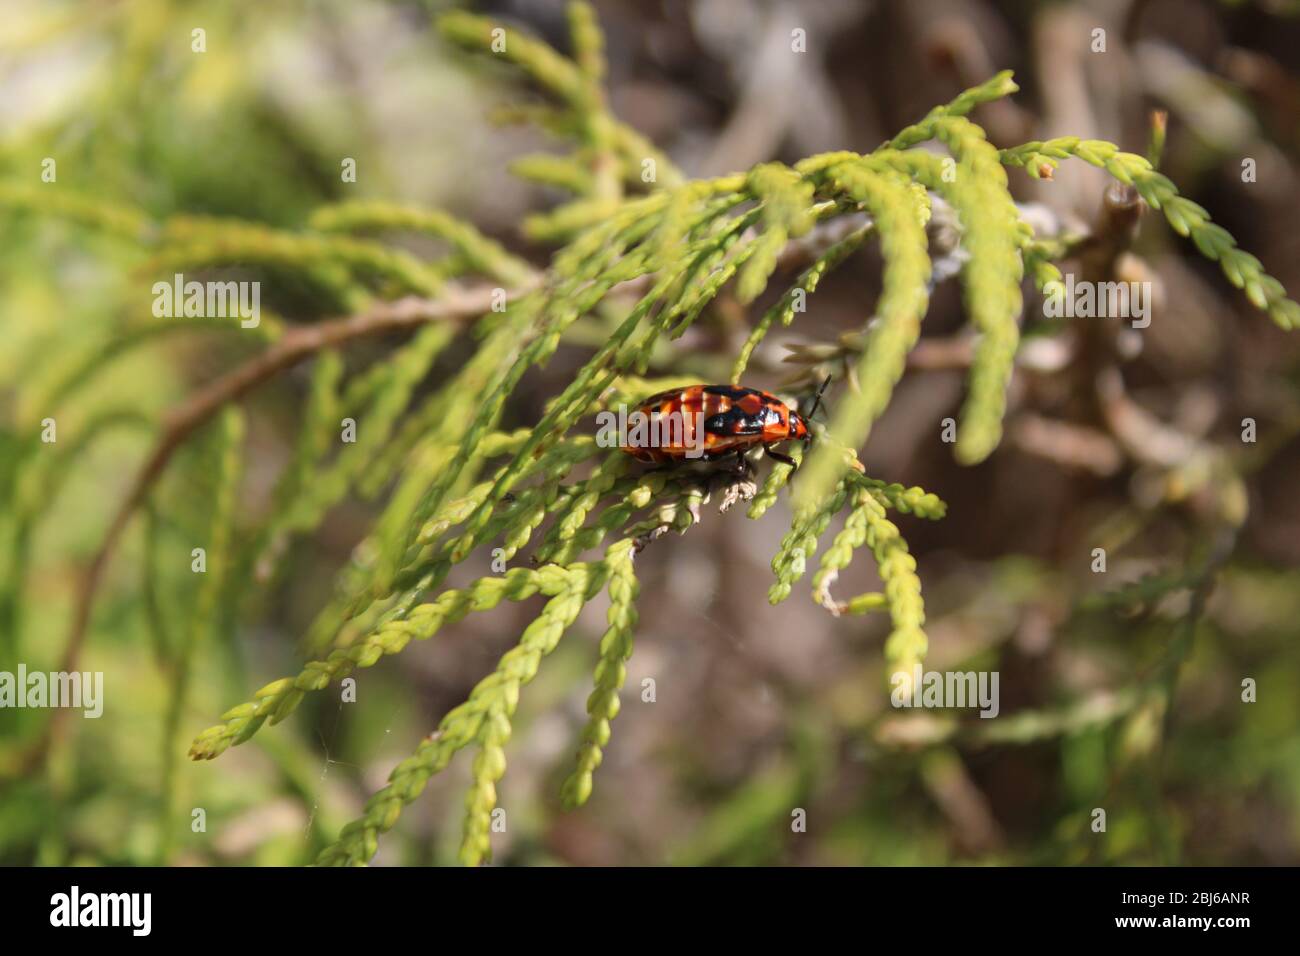 El escarabajo rojo y negro descansa sobre una hoja verde de coníferas Foto de stock